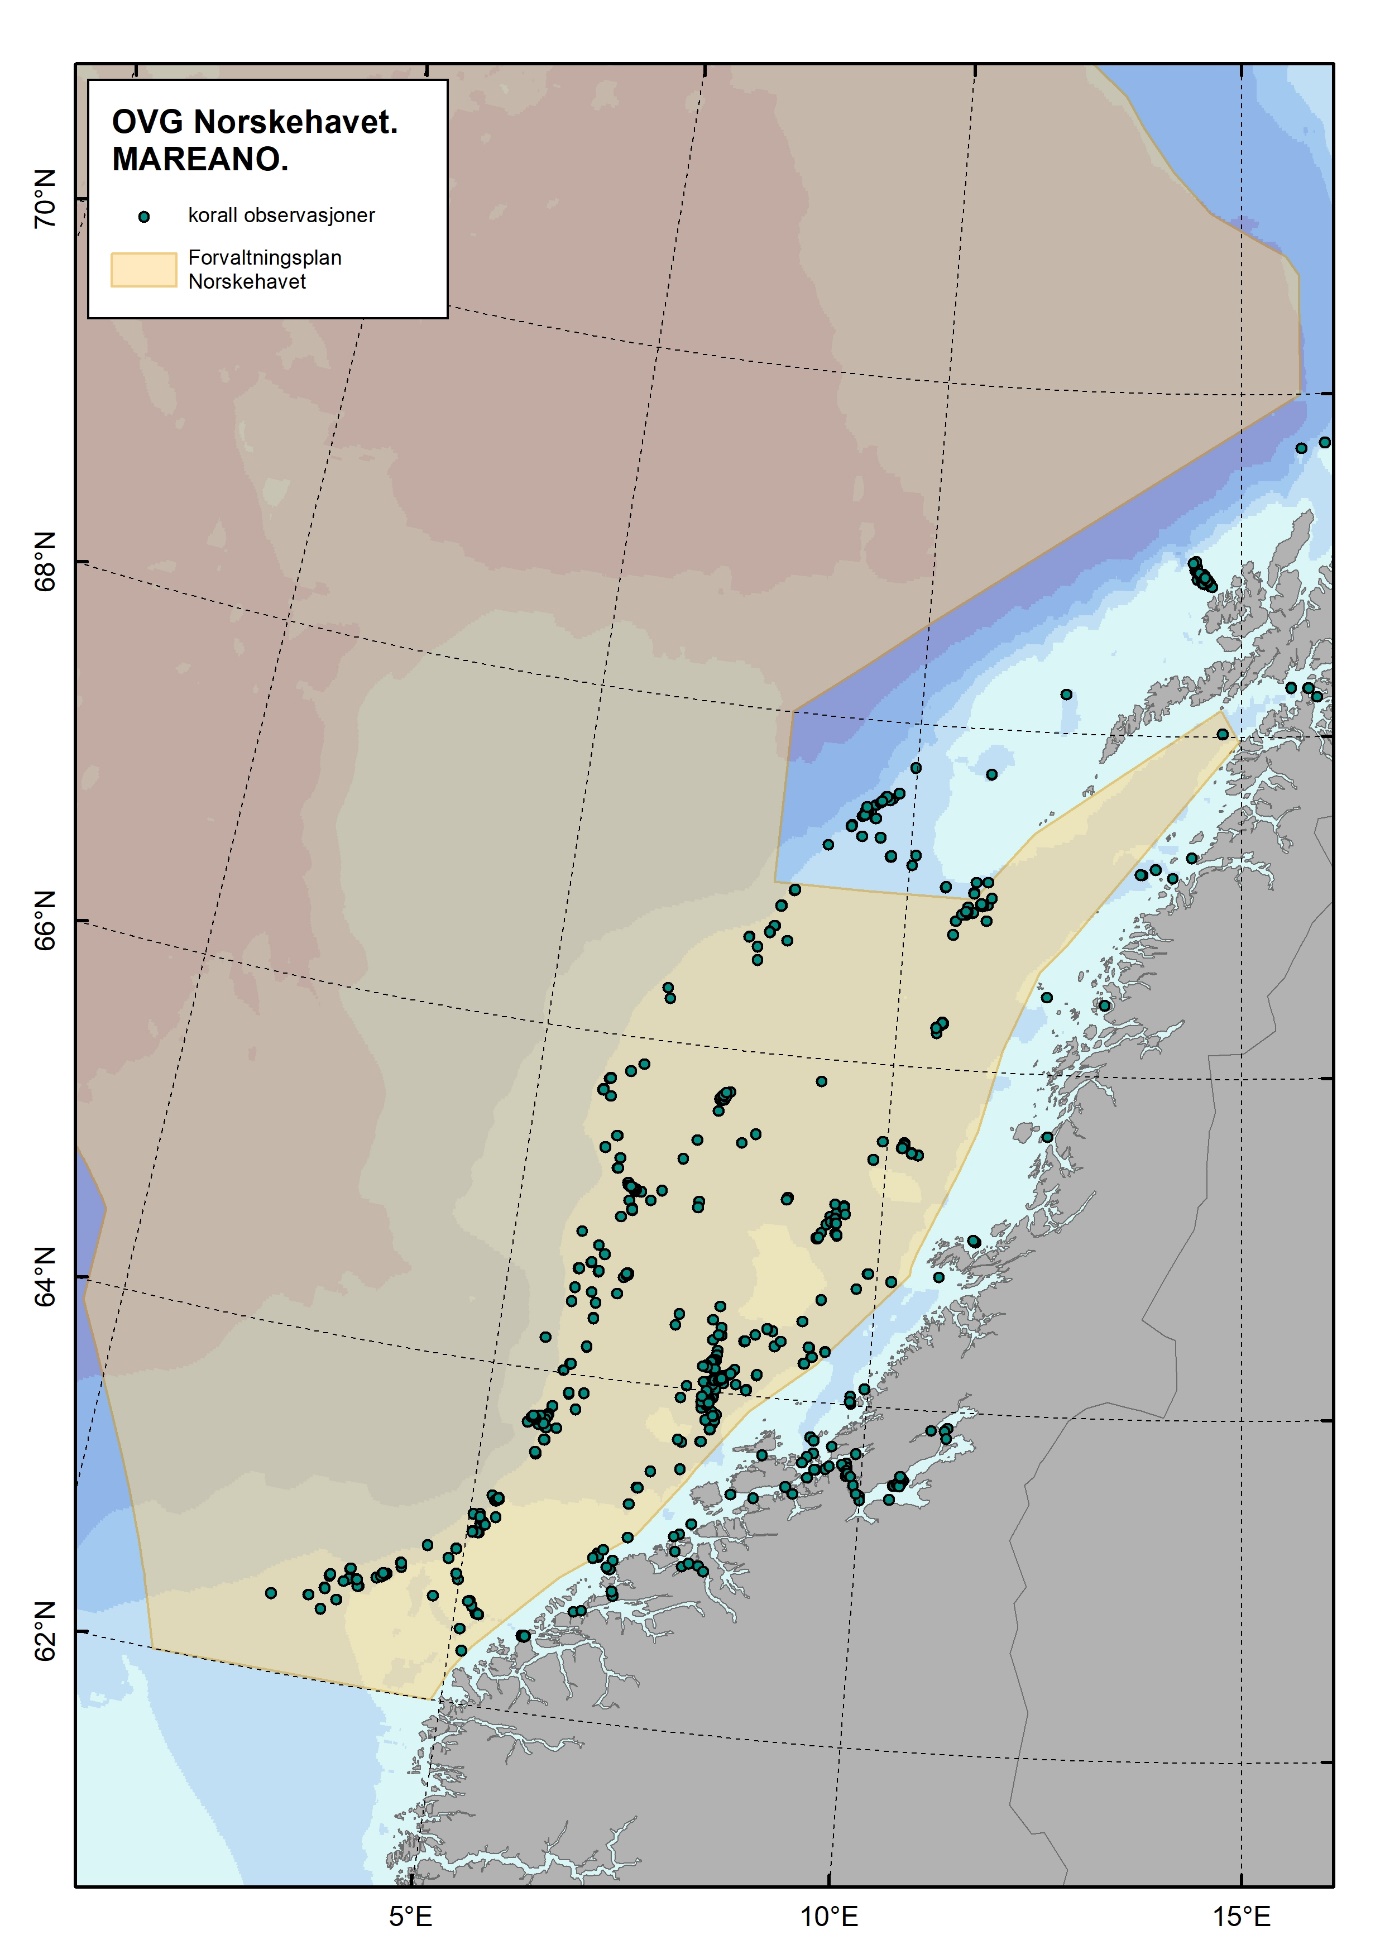 Figur 4.2.7.3 Verifiserte korallrev i Norskehavet. Kartet er basert på informasjon fra mange forskjellige kilder som fiskere, petroleumsindustrien, tidligere vitenskapelige publikasjoner samt Mareano, som har oppdaget de fleste av korallrevene. Kilde: Mareano.